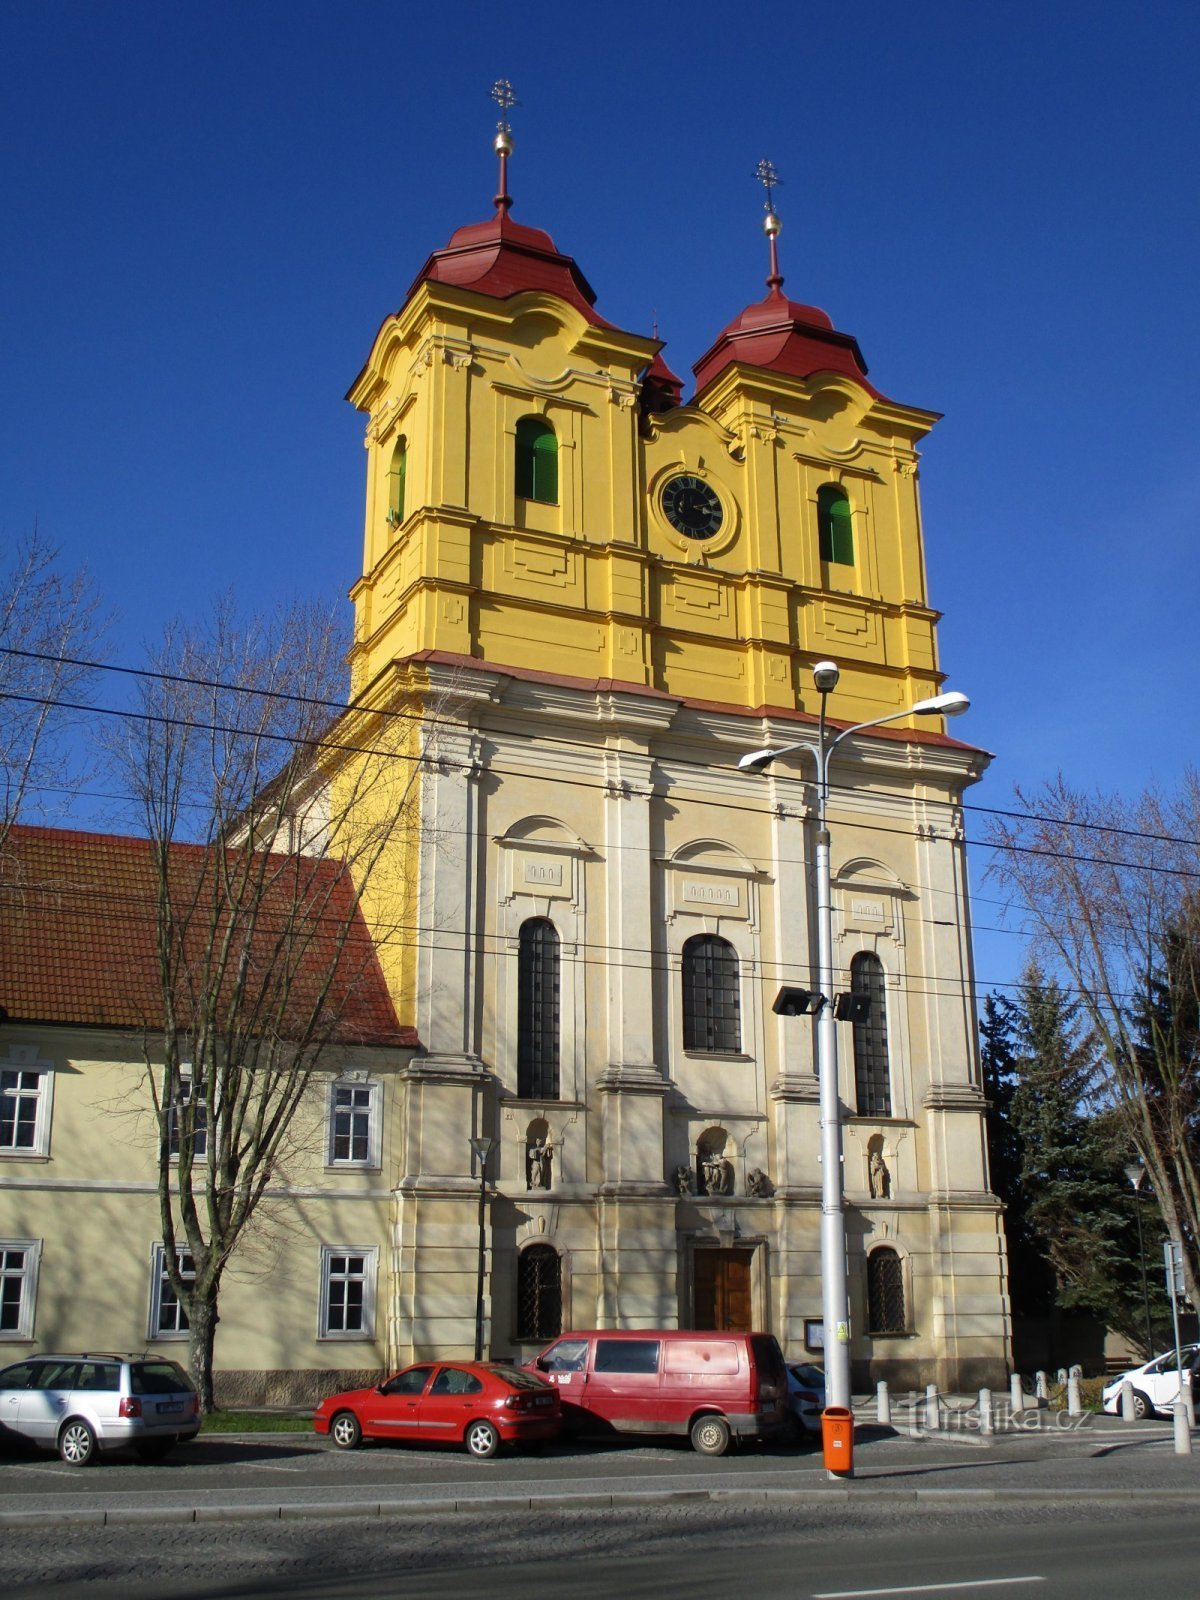 Pyhän kirkko Anne in Kukleny (Hradec Králové, 15.3.2020)